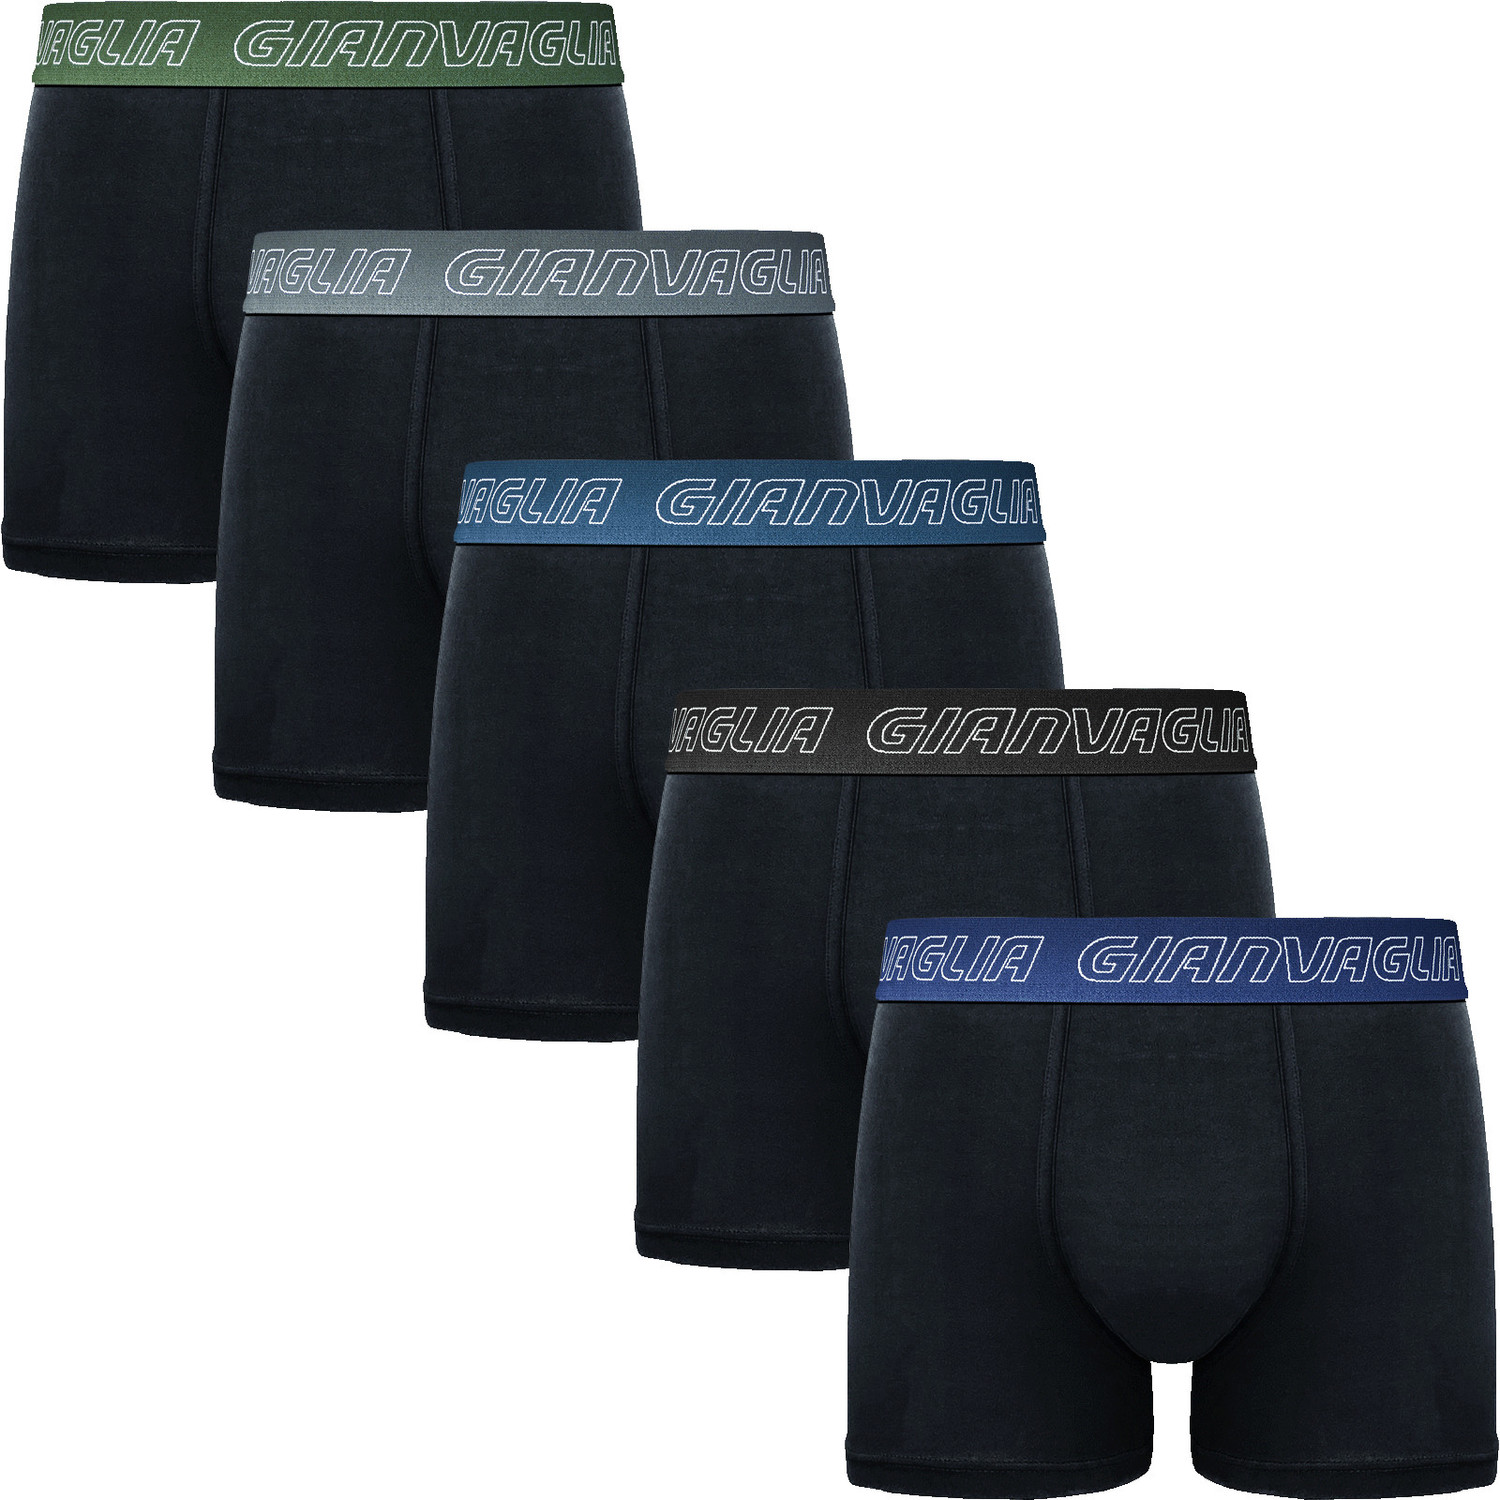 5PACK pánské boxerky Gianvaglia černé (GVG-5014) XXL